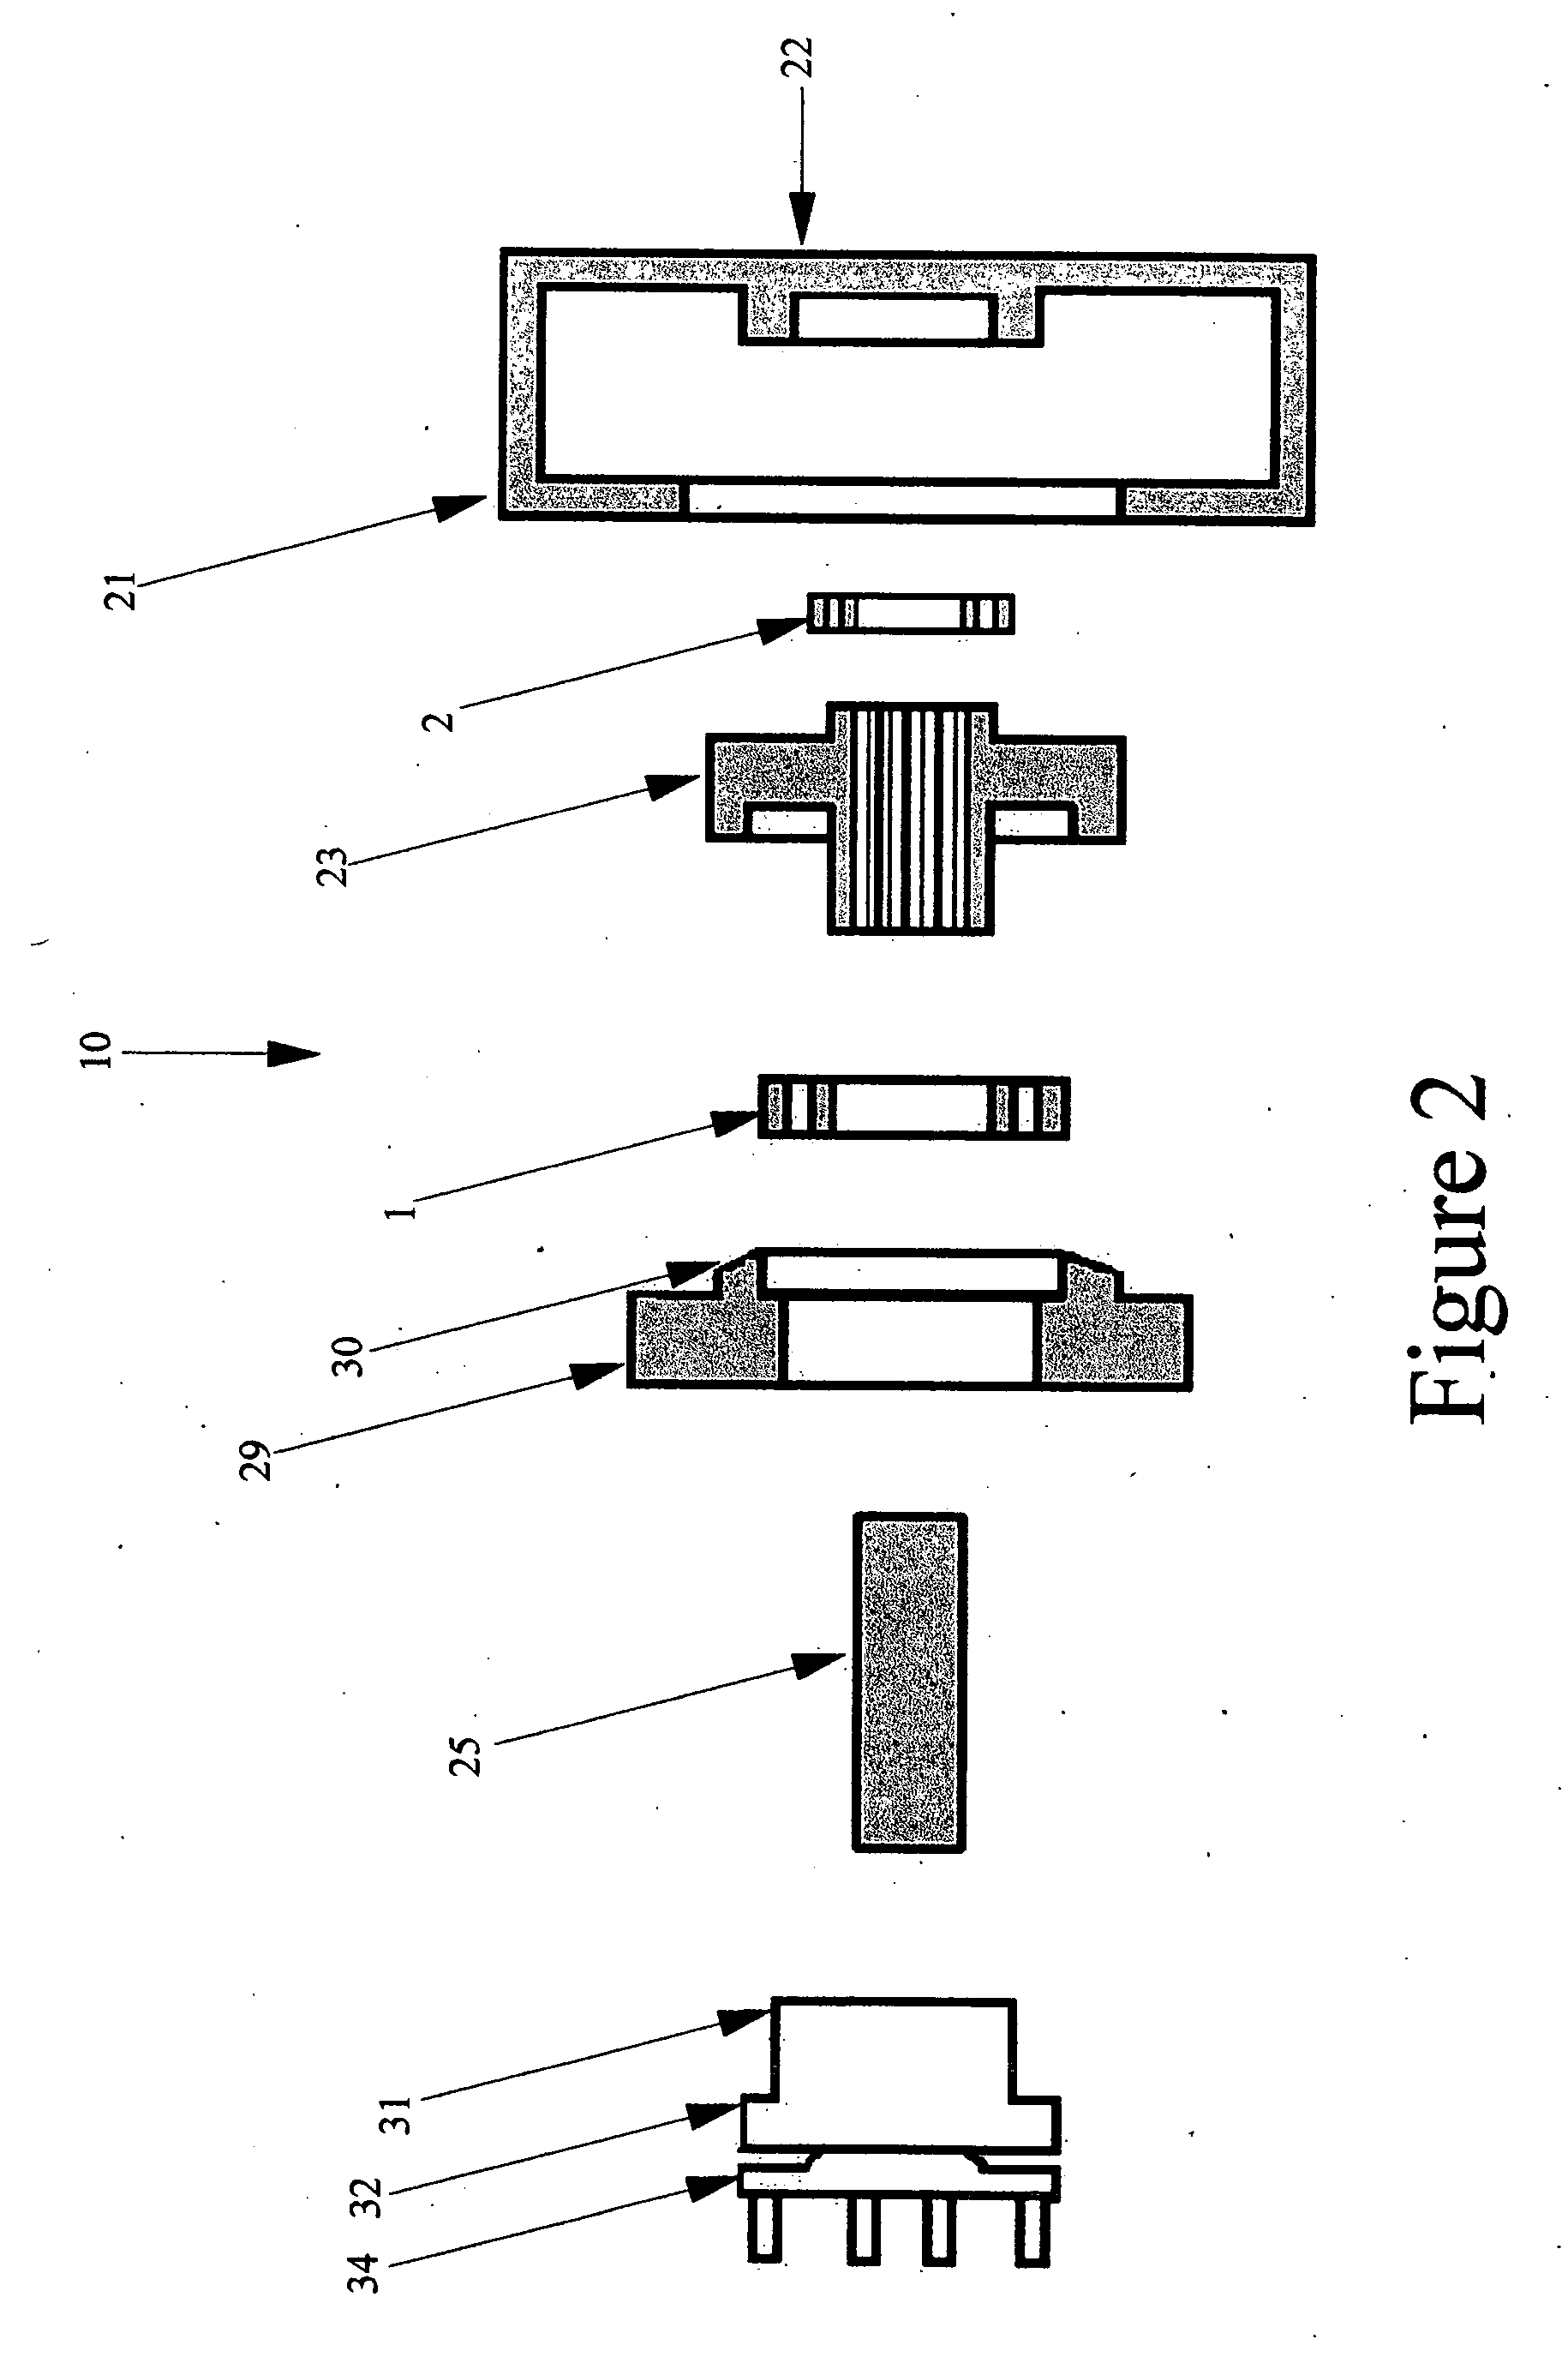 Portal axle apparatus